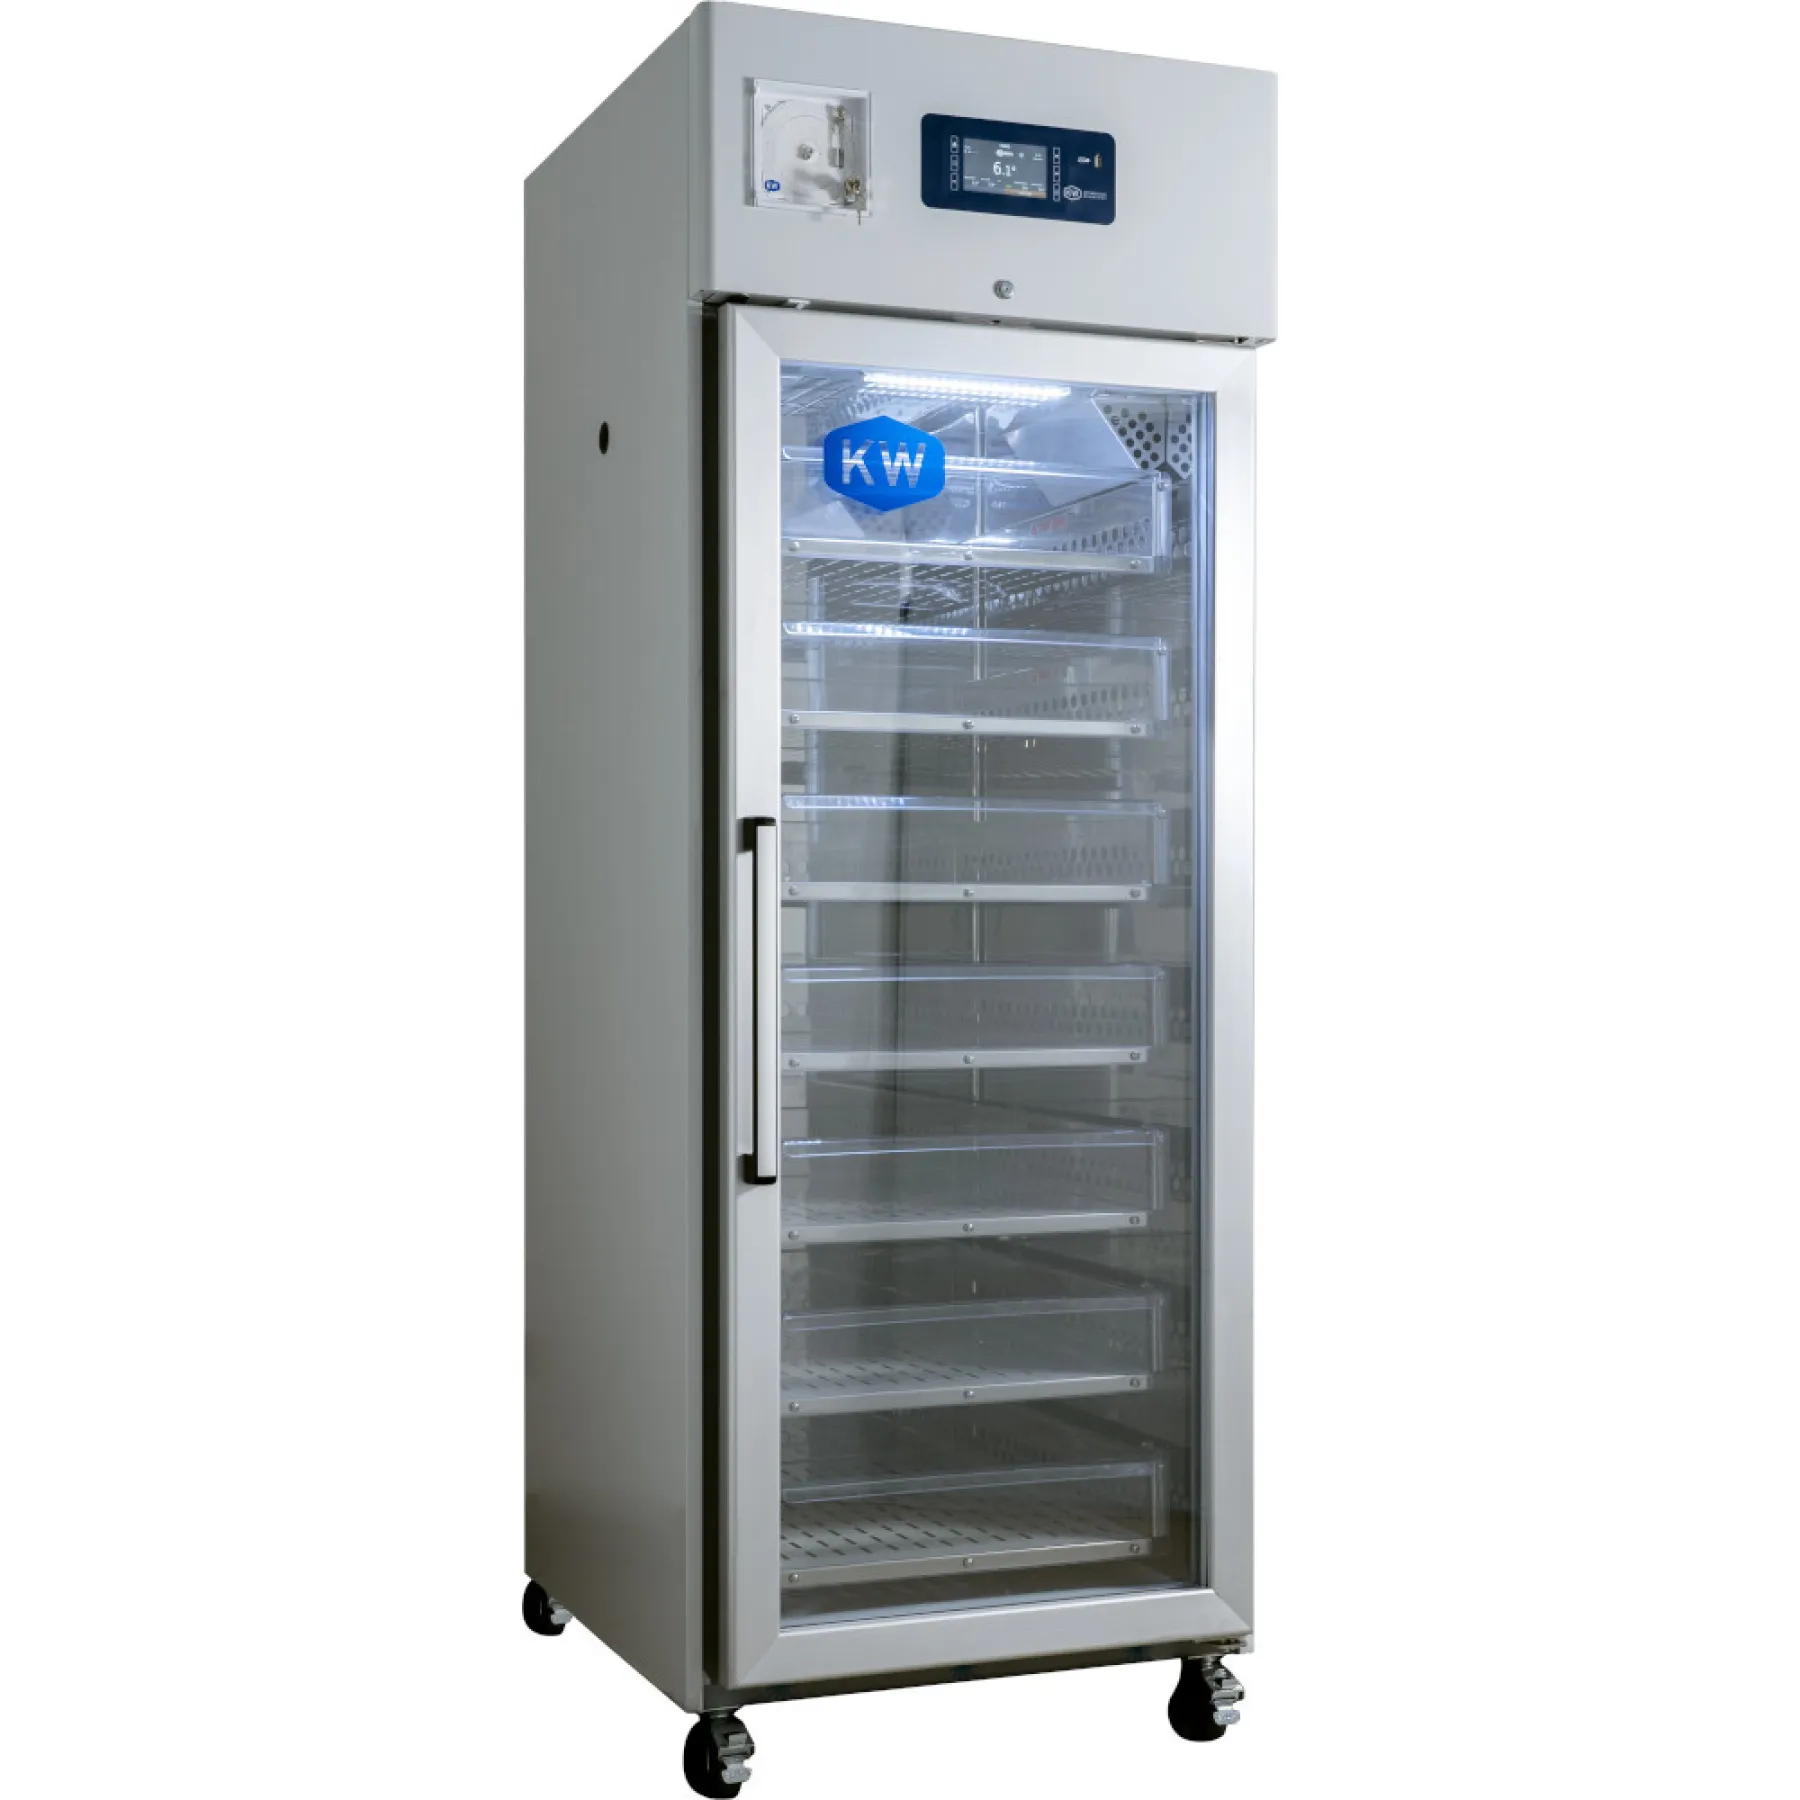 CryoSolutions KW Apparecchi Scientifici HAEMO 700V Kühlschrank +4 °C